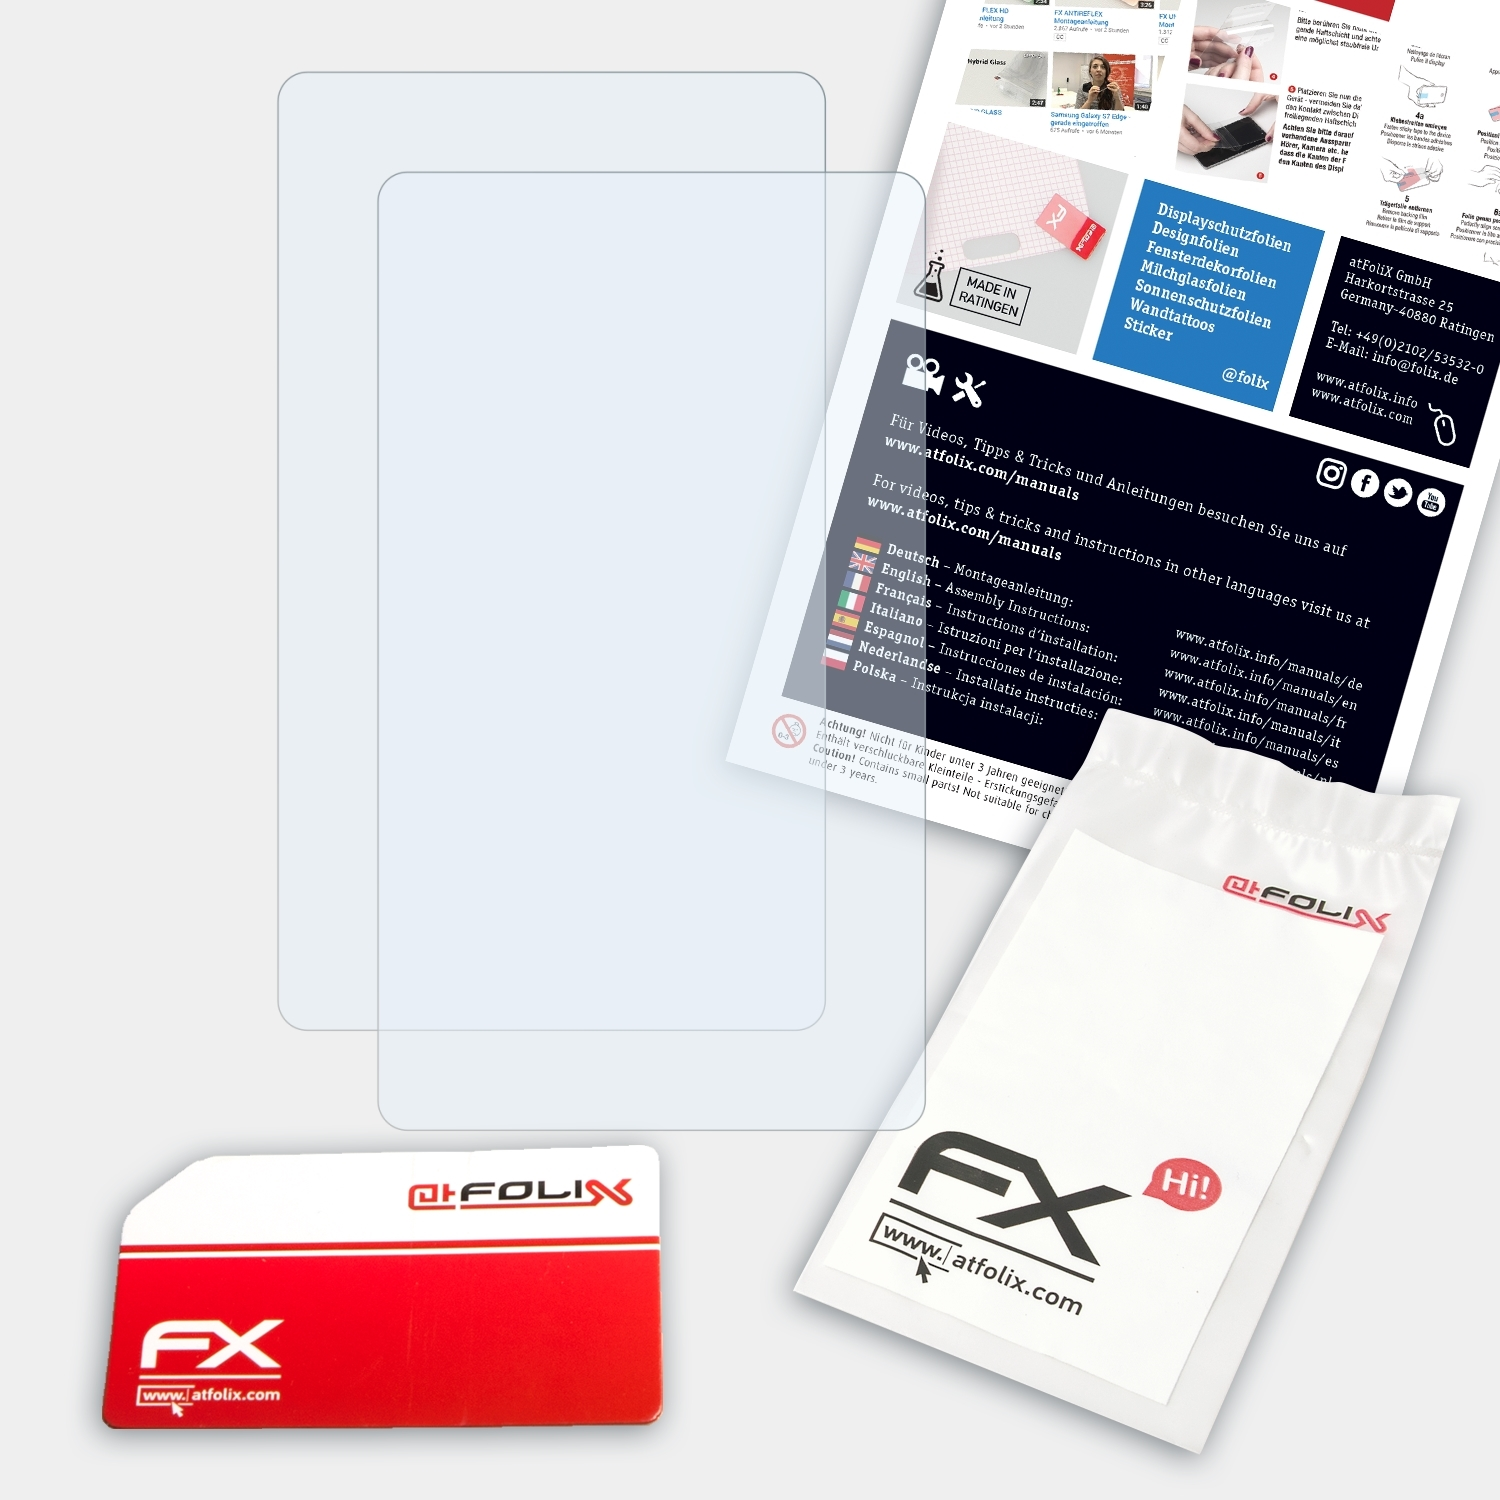 ATFOLIX 2x FX-Clear Casio FX-9860GIII) Displayschutz(für